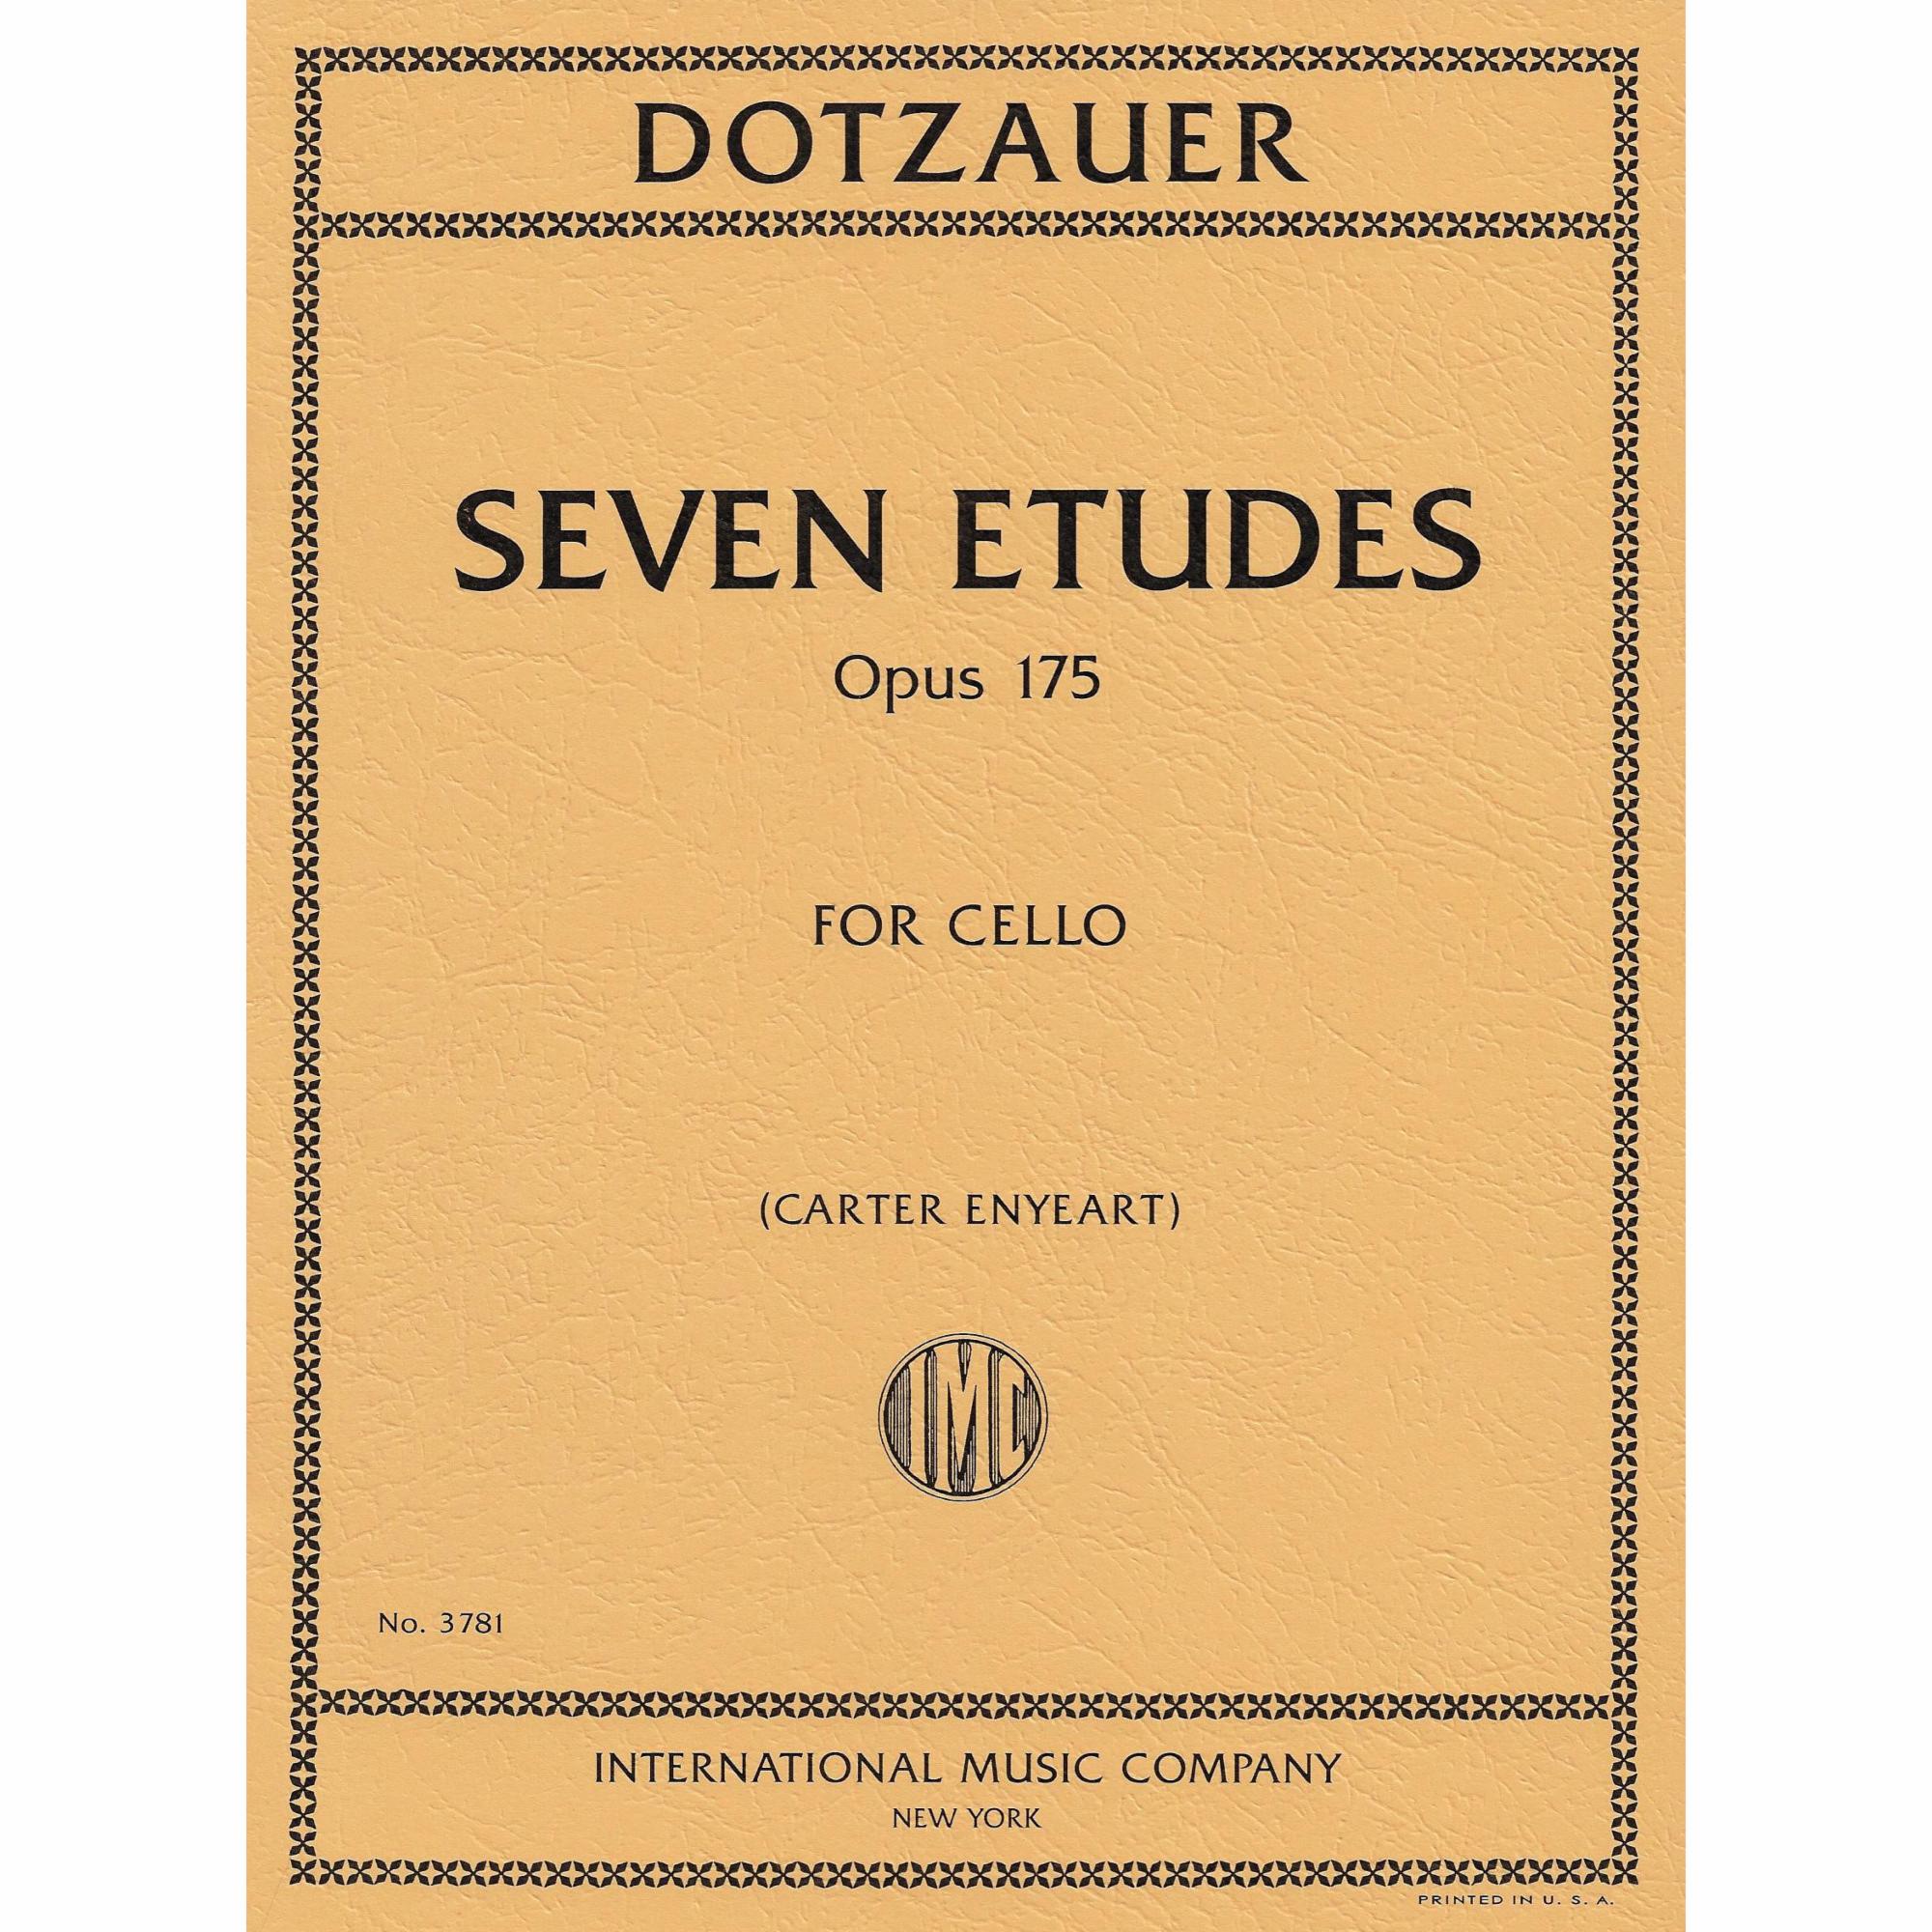 Dotzauer -- Seven Etudes, Op. 175 for Cello